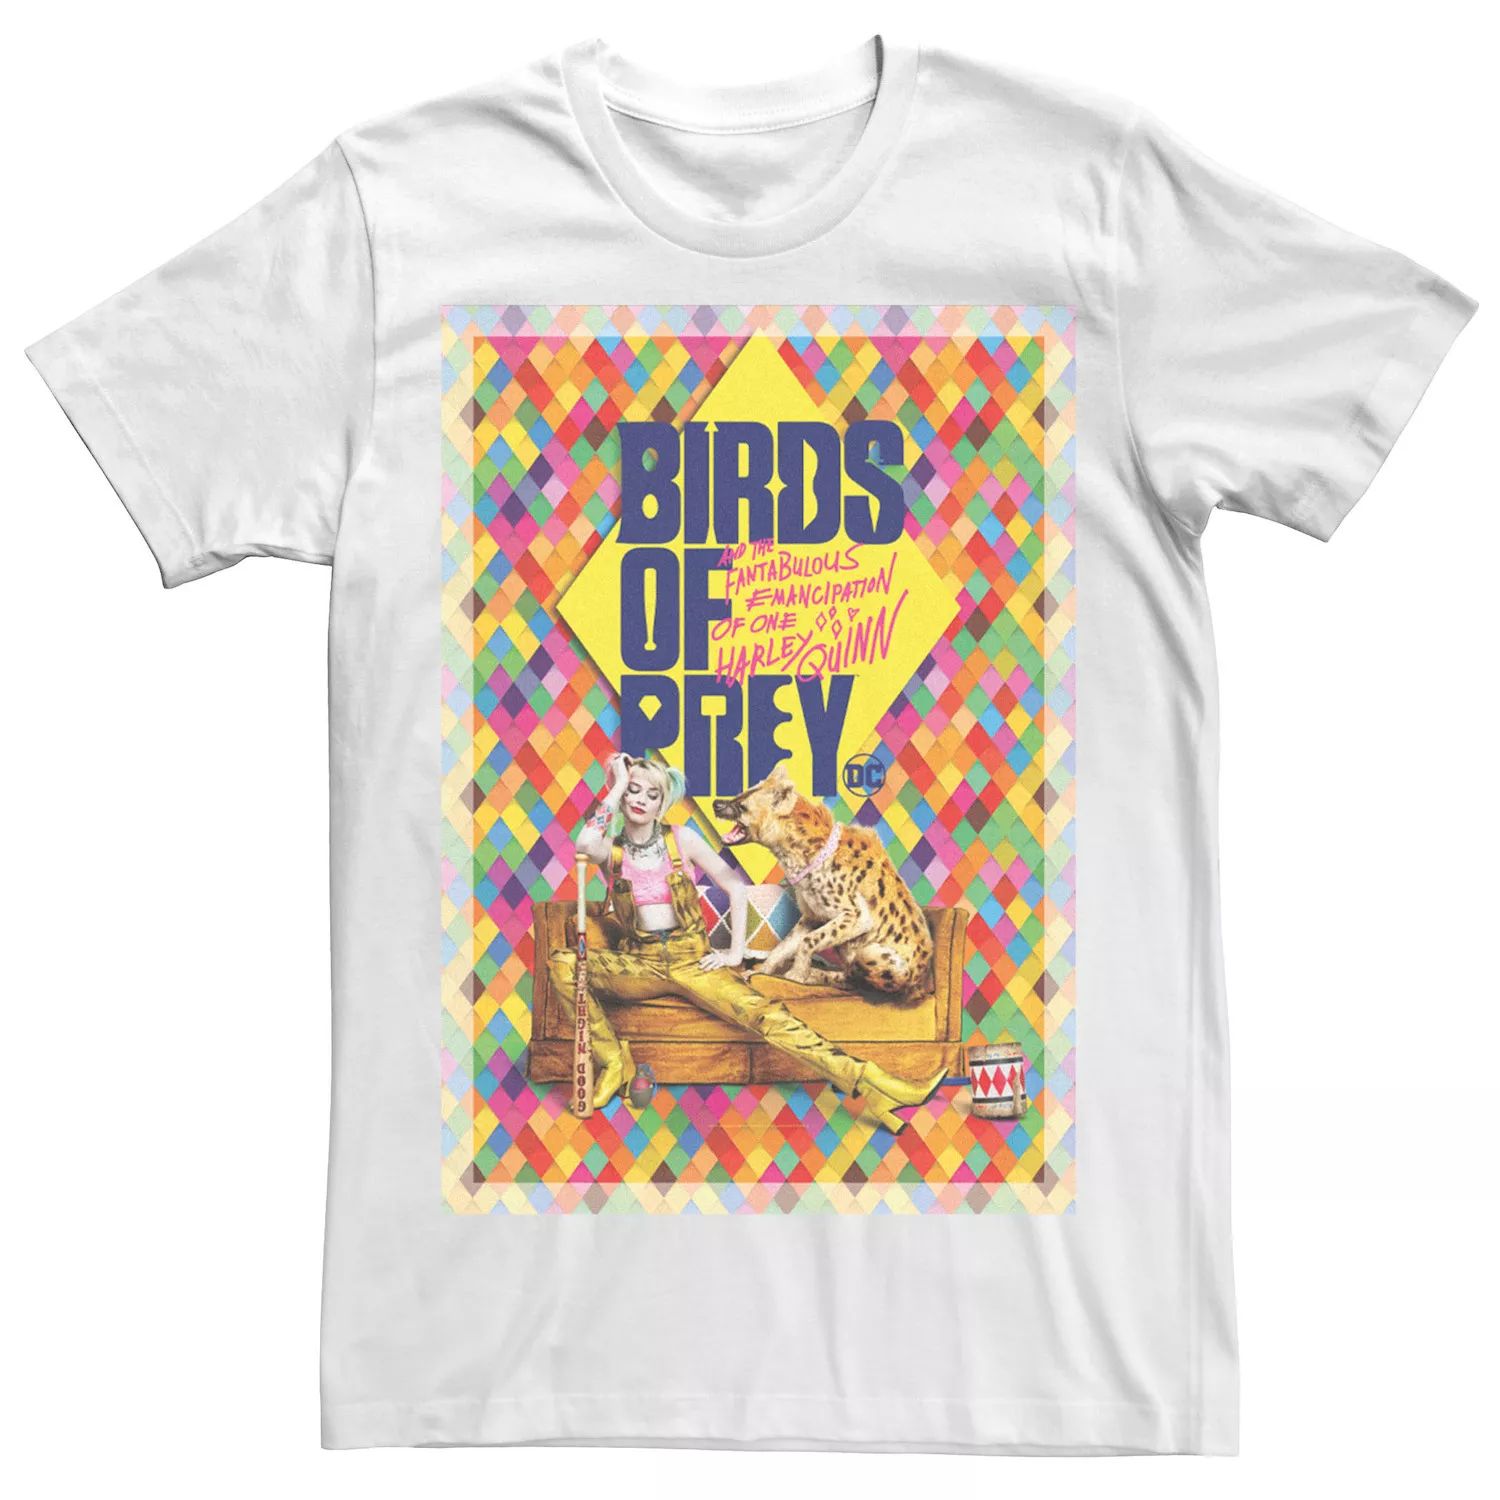 Мужская футболка с плакатом «Хищные птицы» Harley Hyena DC Comics мужская футболка с текстовым логотипом хищные птицы dc comics